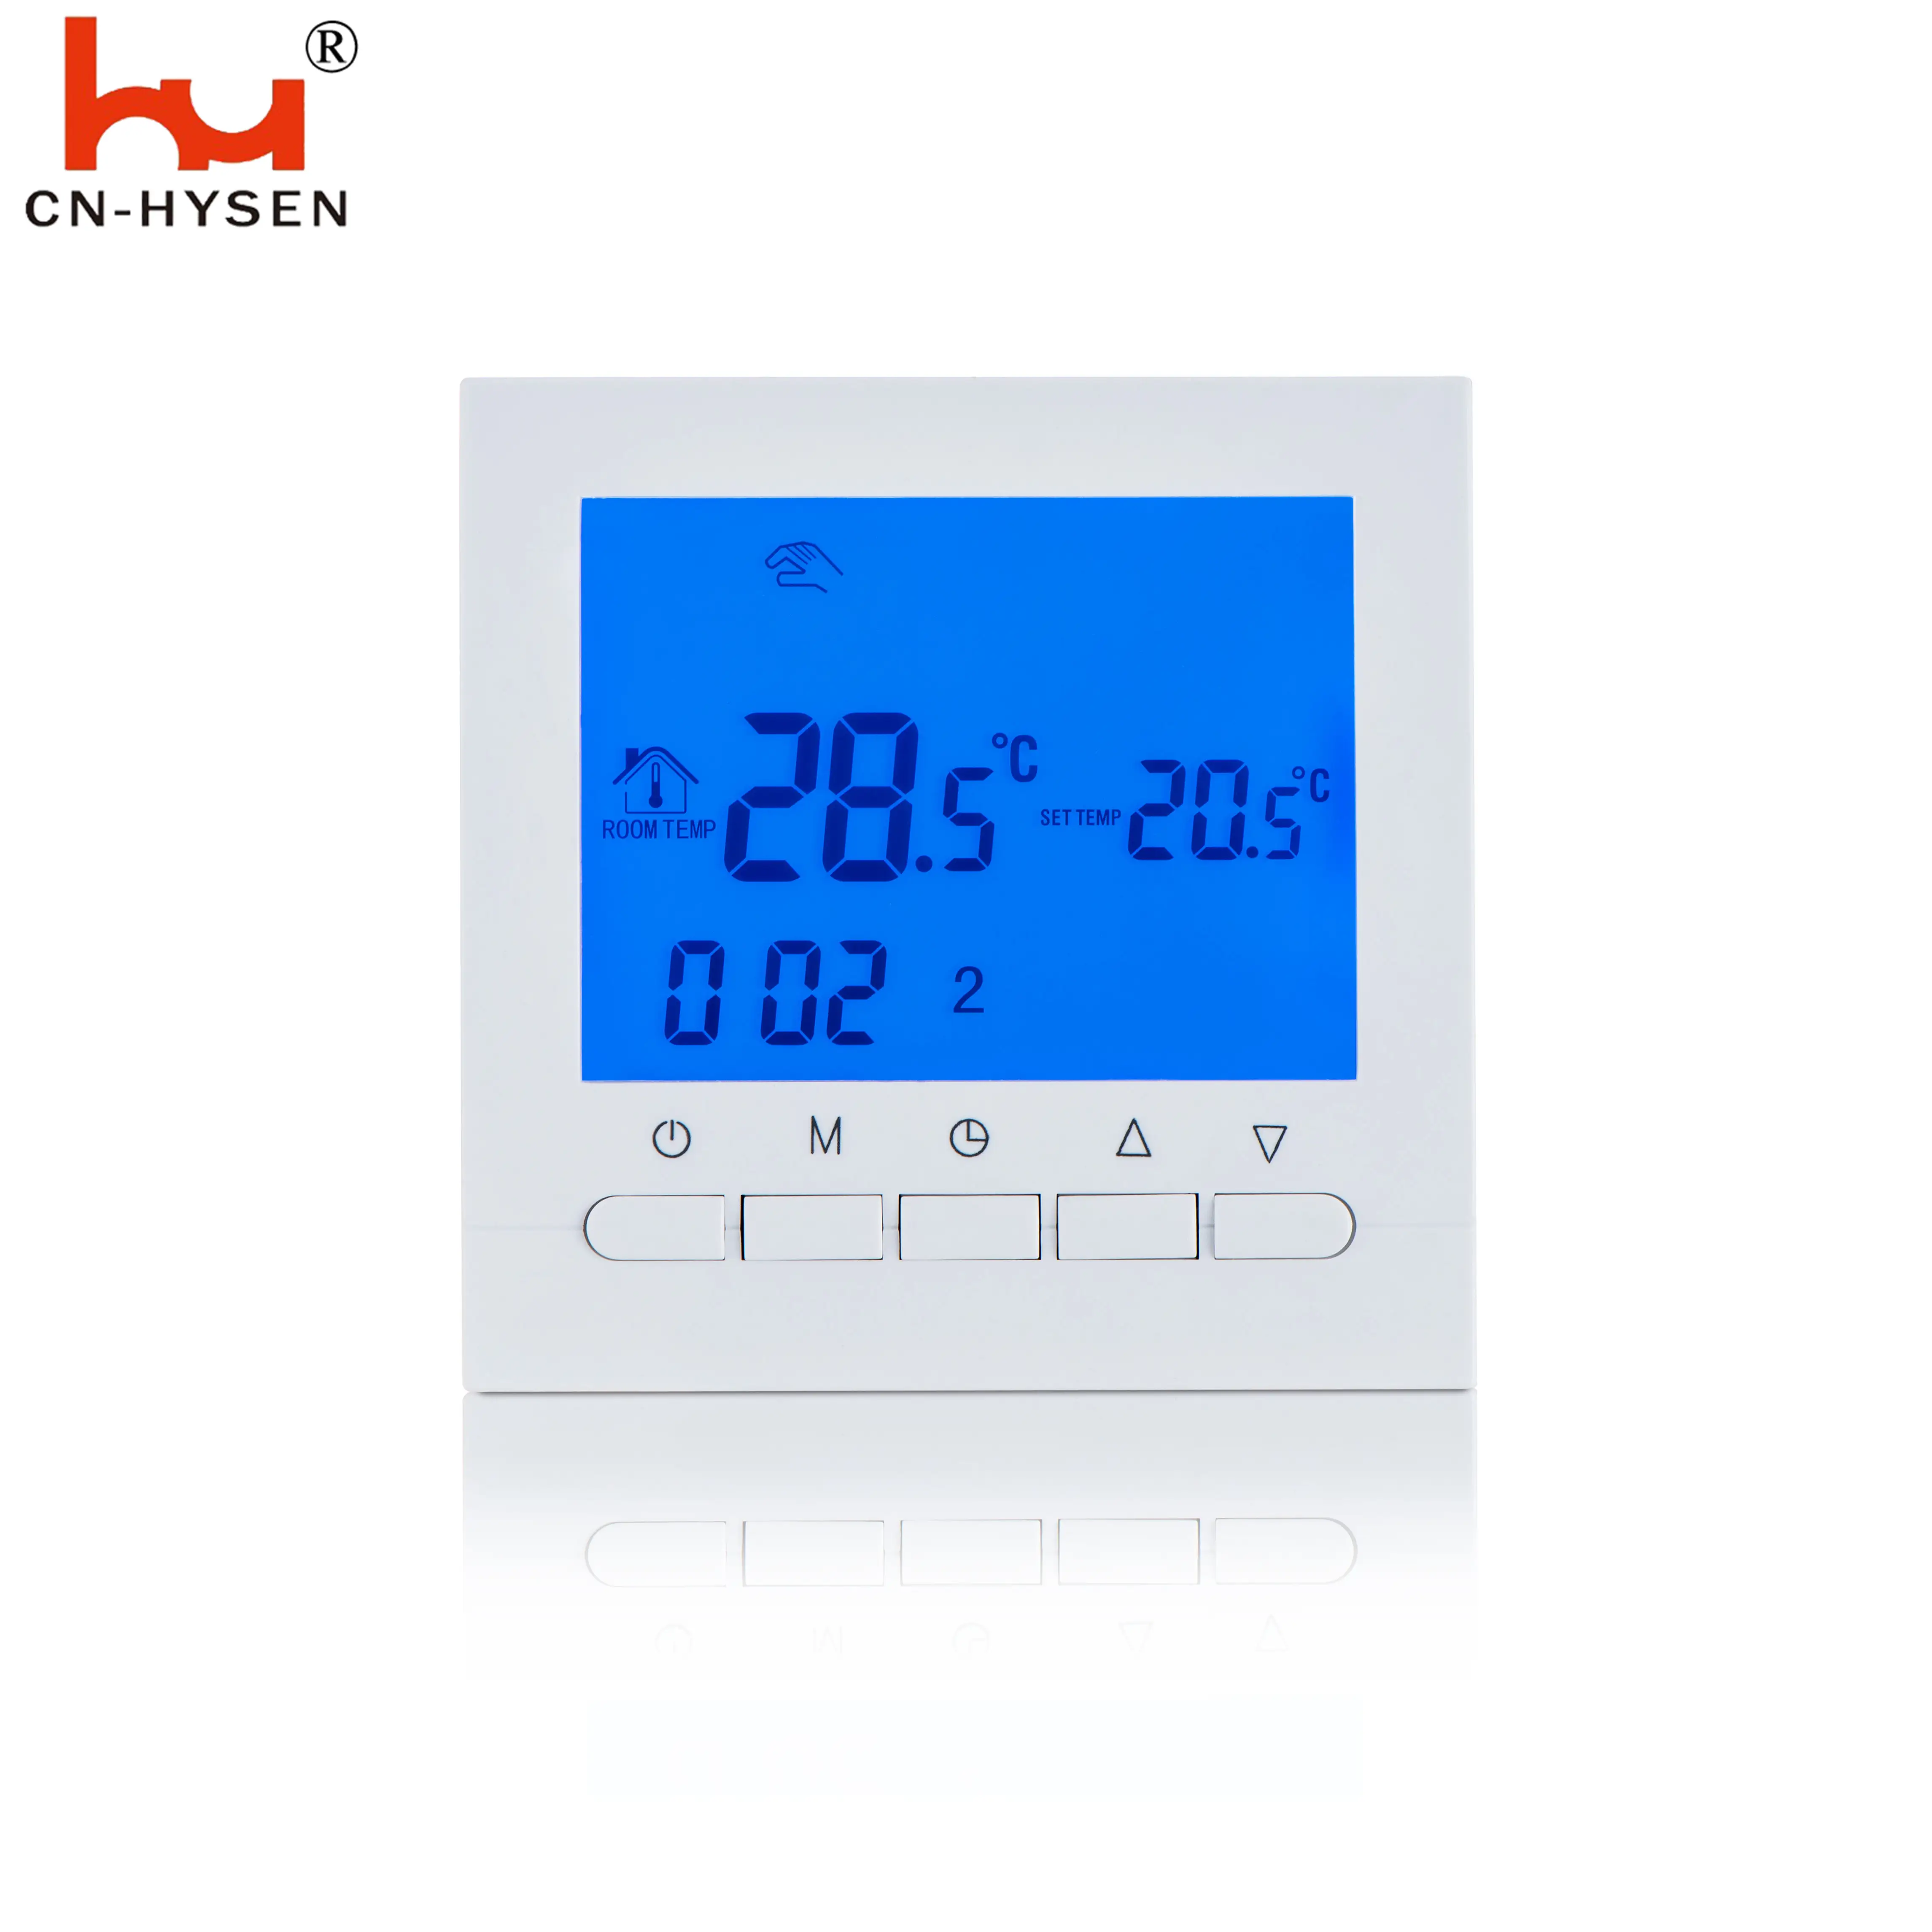 Kolay kullanım haftalık programlanabilir termostat dijital ekran oda termostatı HY02B05